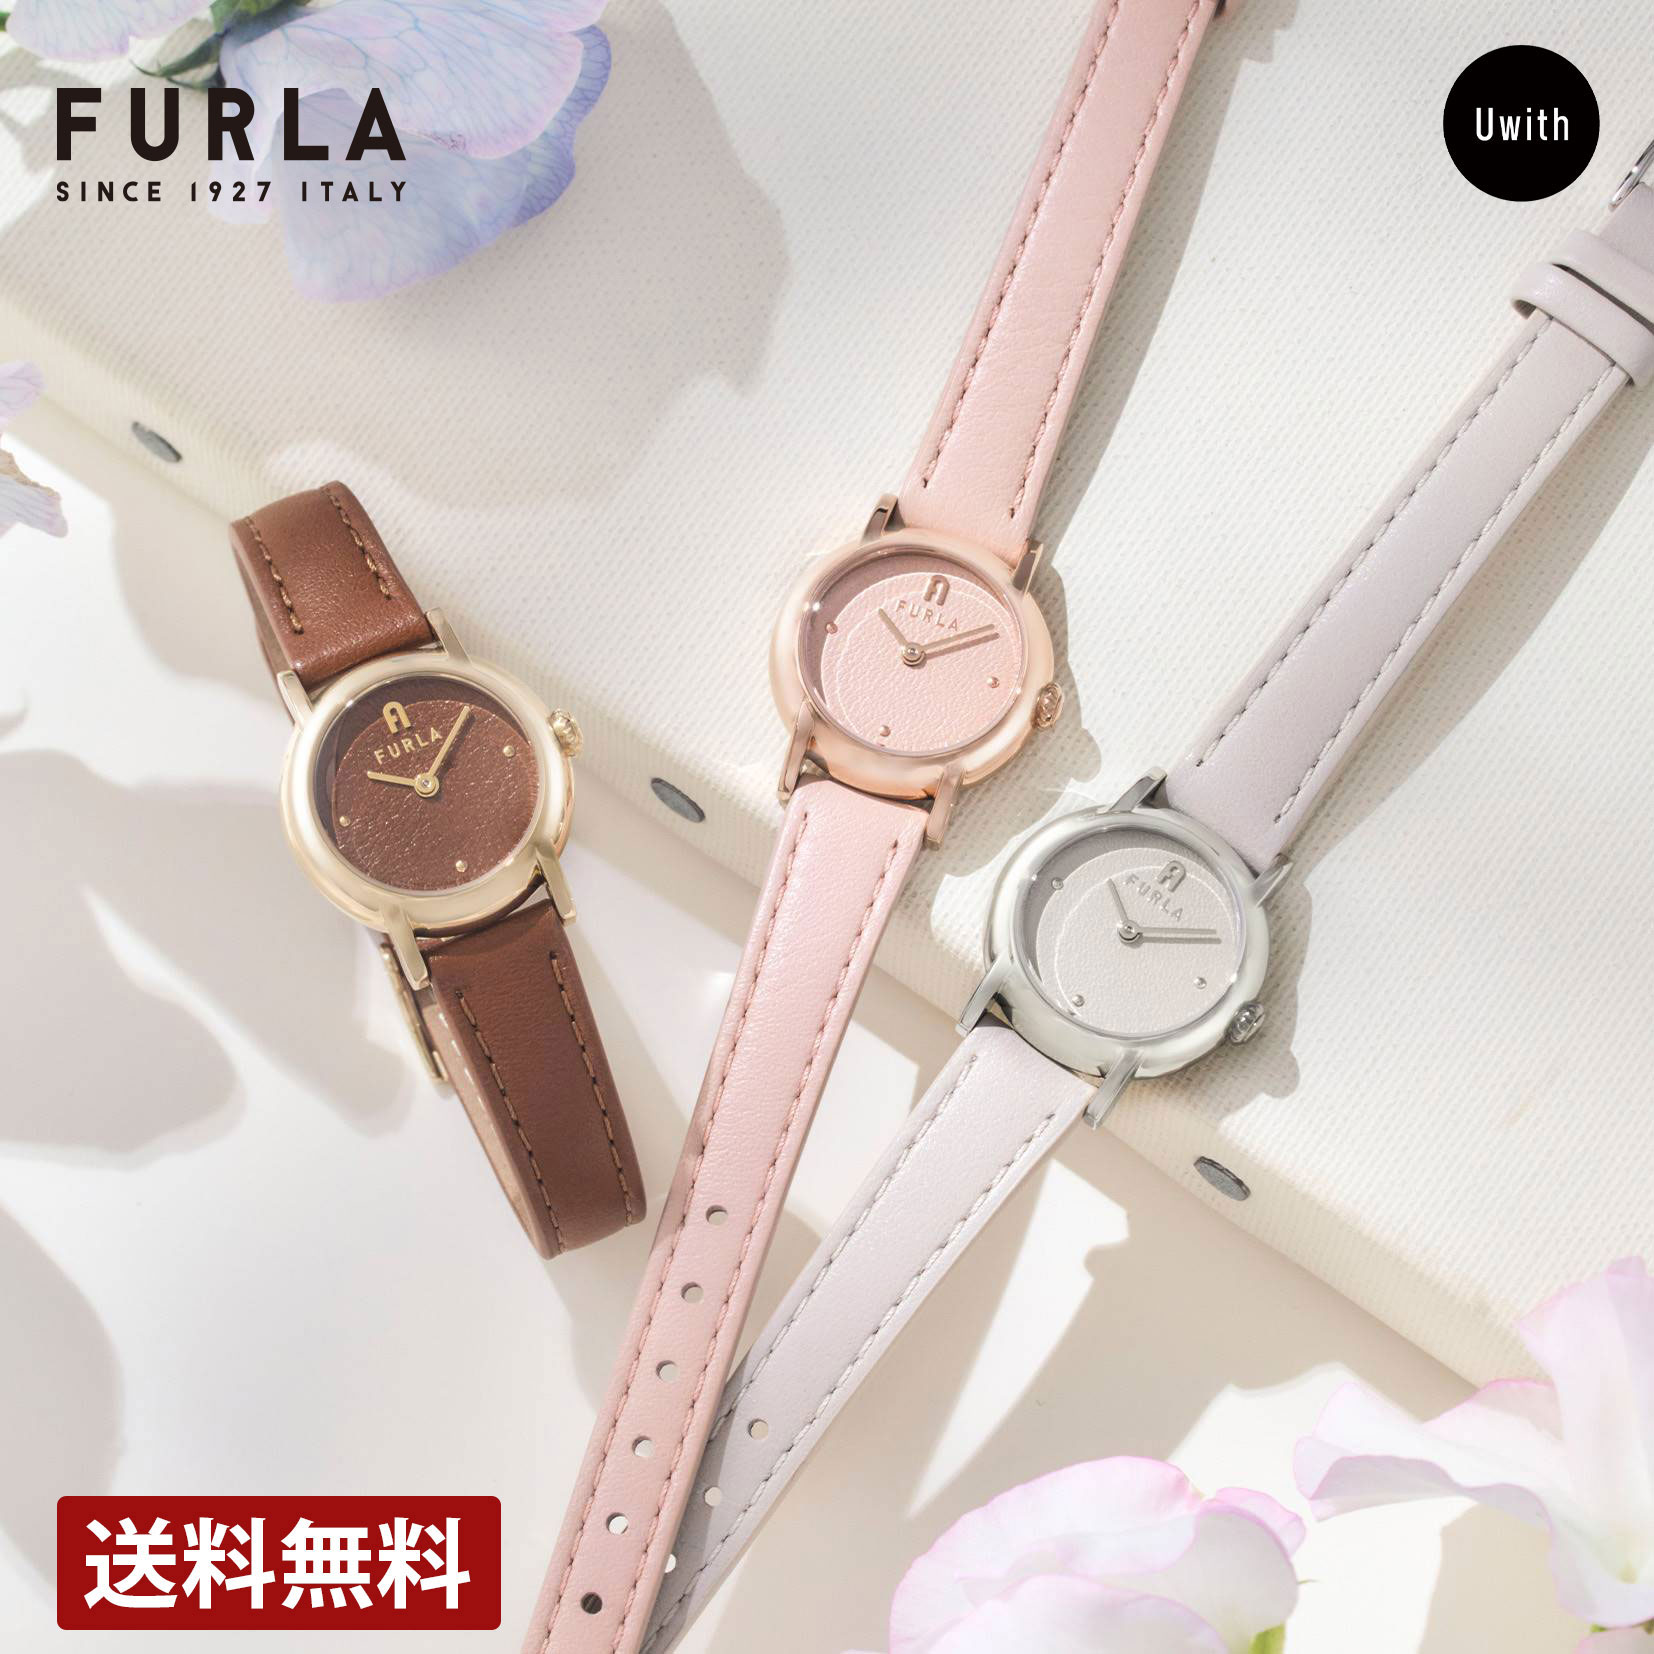 【公式ストア】FURLA フルラ レディース 腕時計 EASY SHAPE -JAPAN EXCL- クォーツ ピンク / ブラウン / ベージュ WW00057001L3 / WW00057002L2 / WW00057004L1 ブランド 時計 プレゼント 女性 ギフト